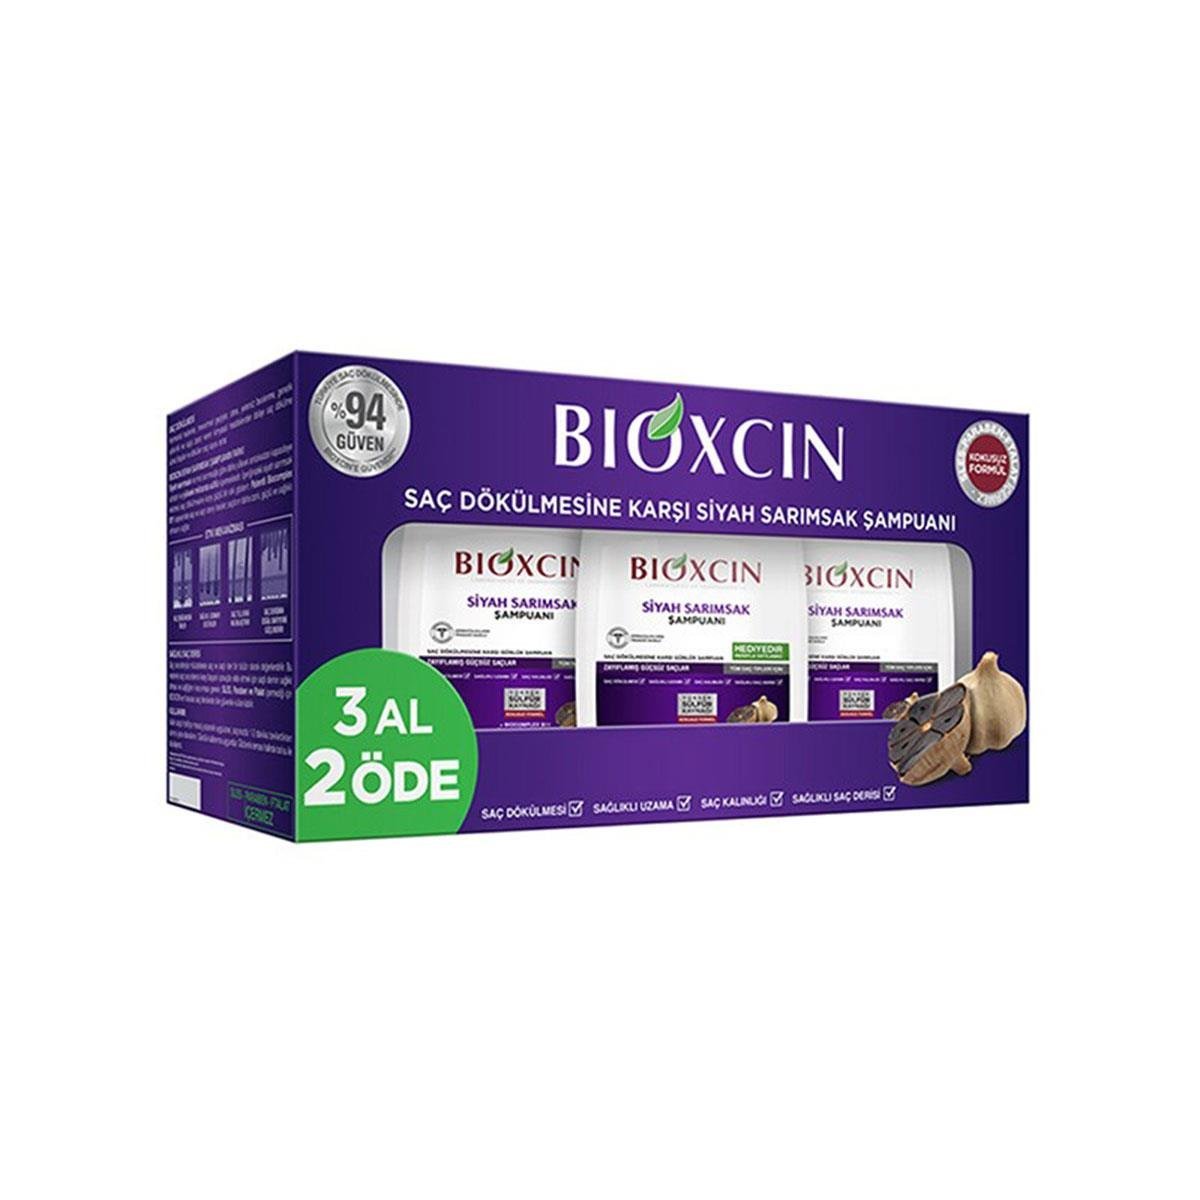 Bioxcin Saç Dökülmesine Karşı Siyah Sarımsak Şampuanı 3x300 ml - Daffne